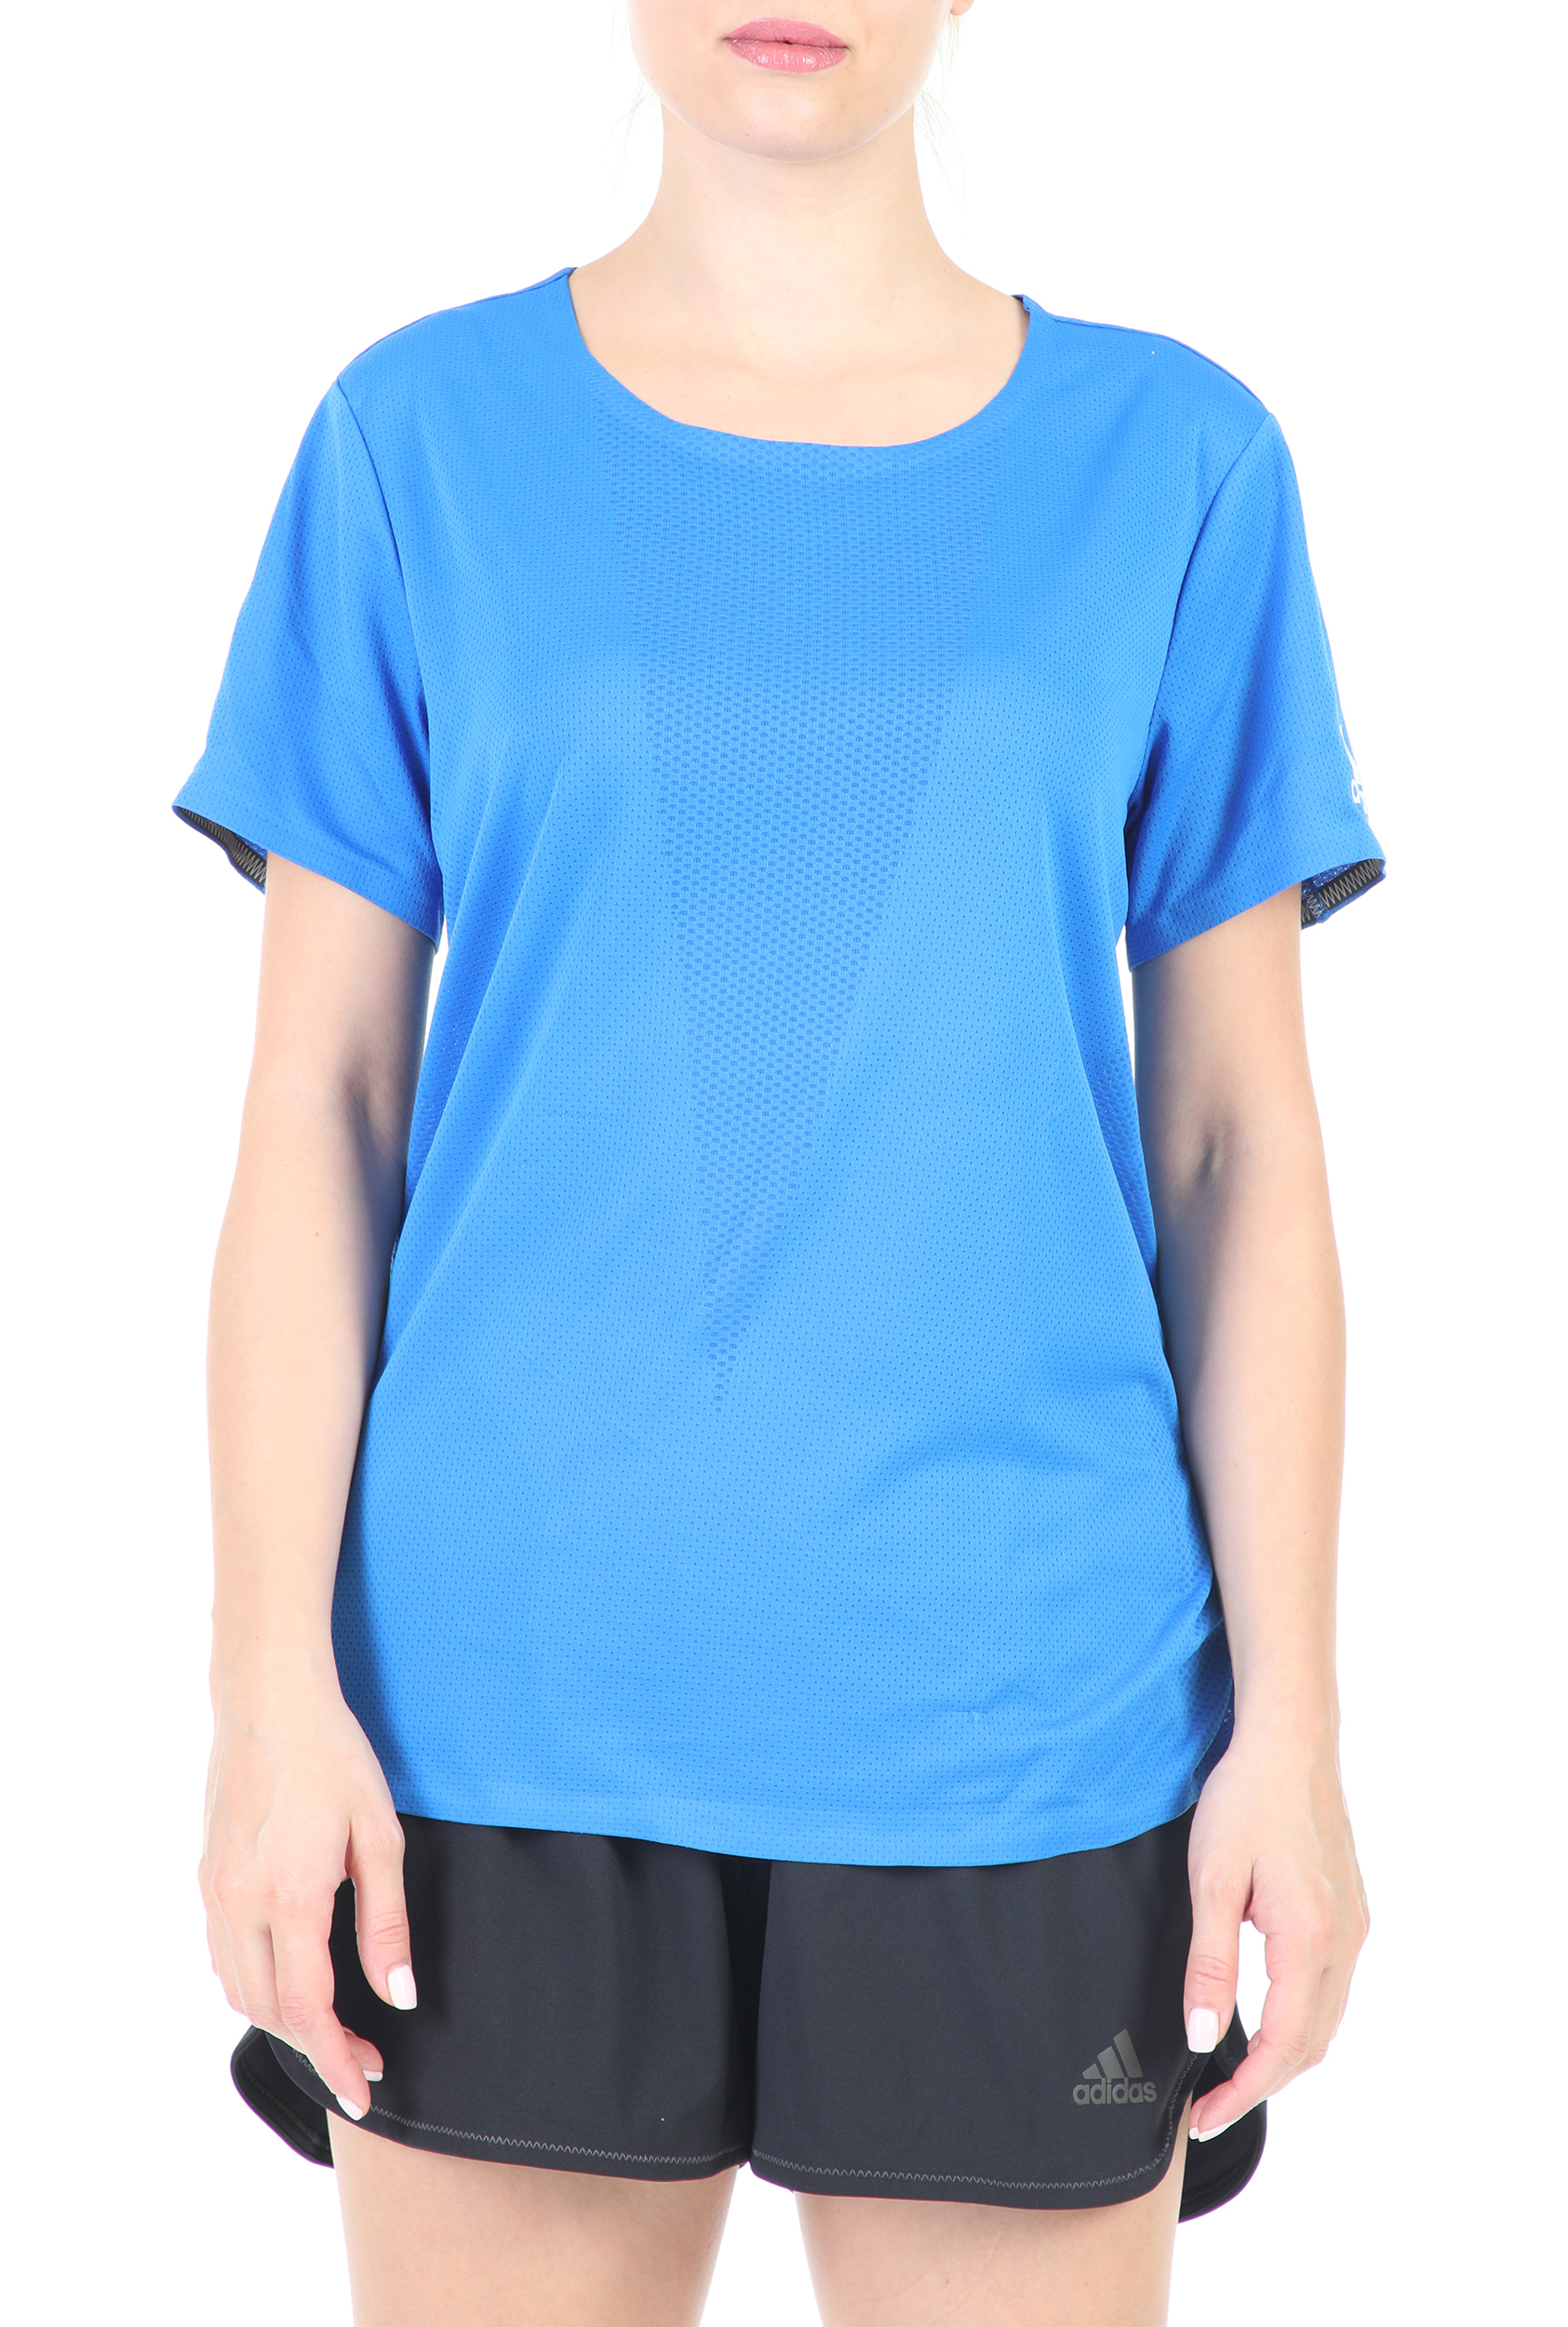 Γυναικεία/Ρούχα/Αθλητικά/T-shirt-Τοπ adidas Performance - Γυναικείο αθλητικό t-shirt adidas HEAT.RDY μπλε